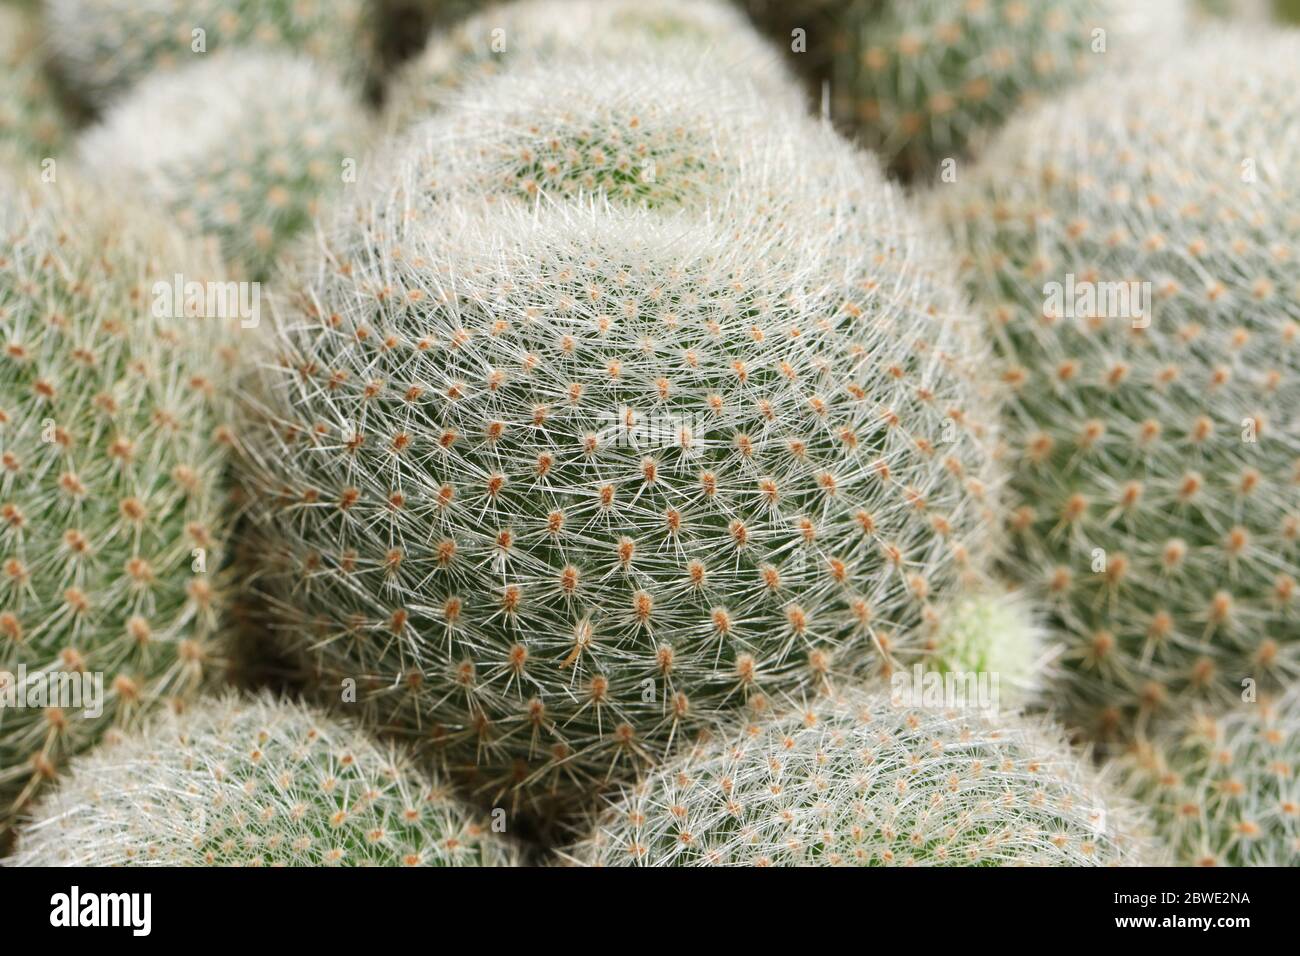 Un grupo de bonito Cactus espinoso, Rebutia lima naranja. Foto de stock